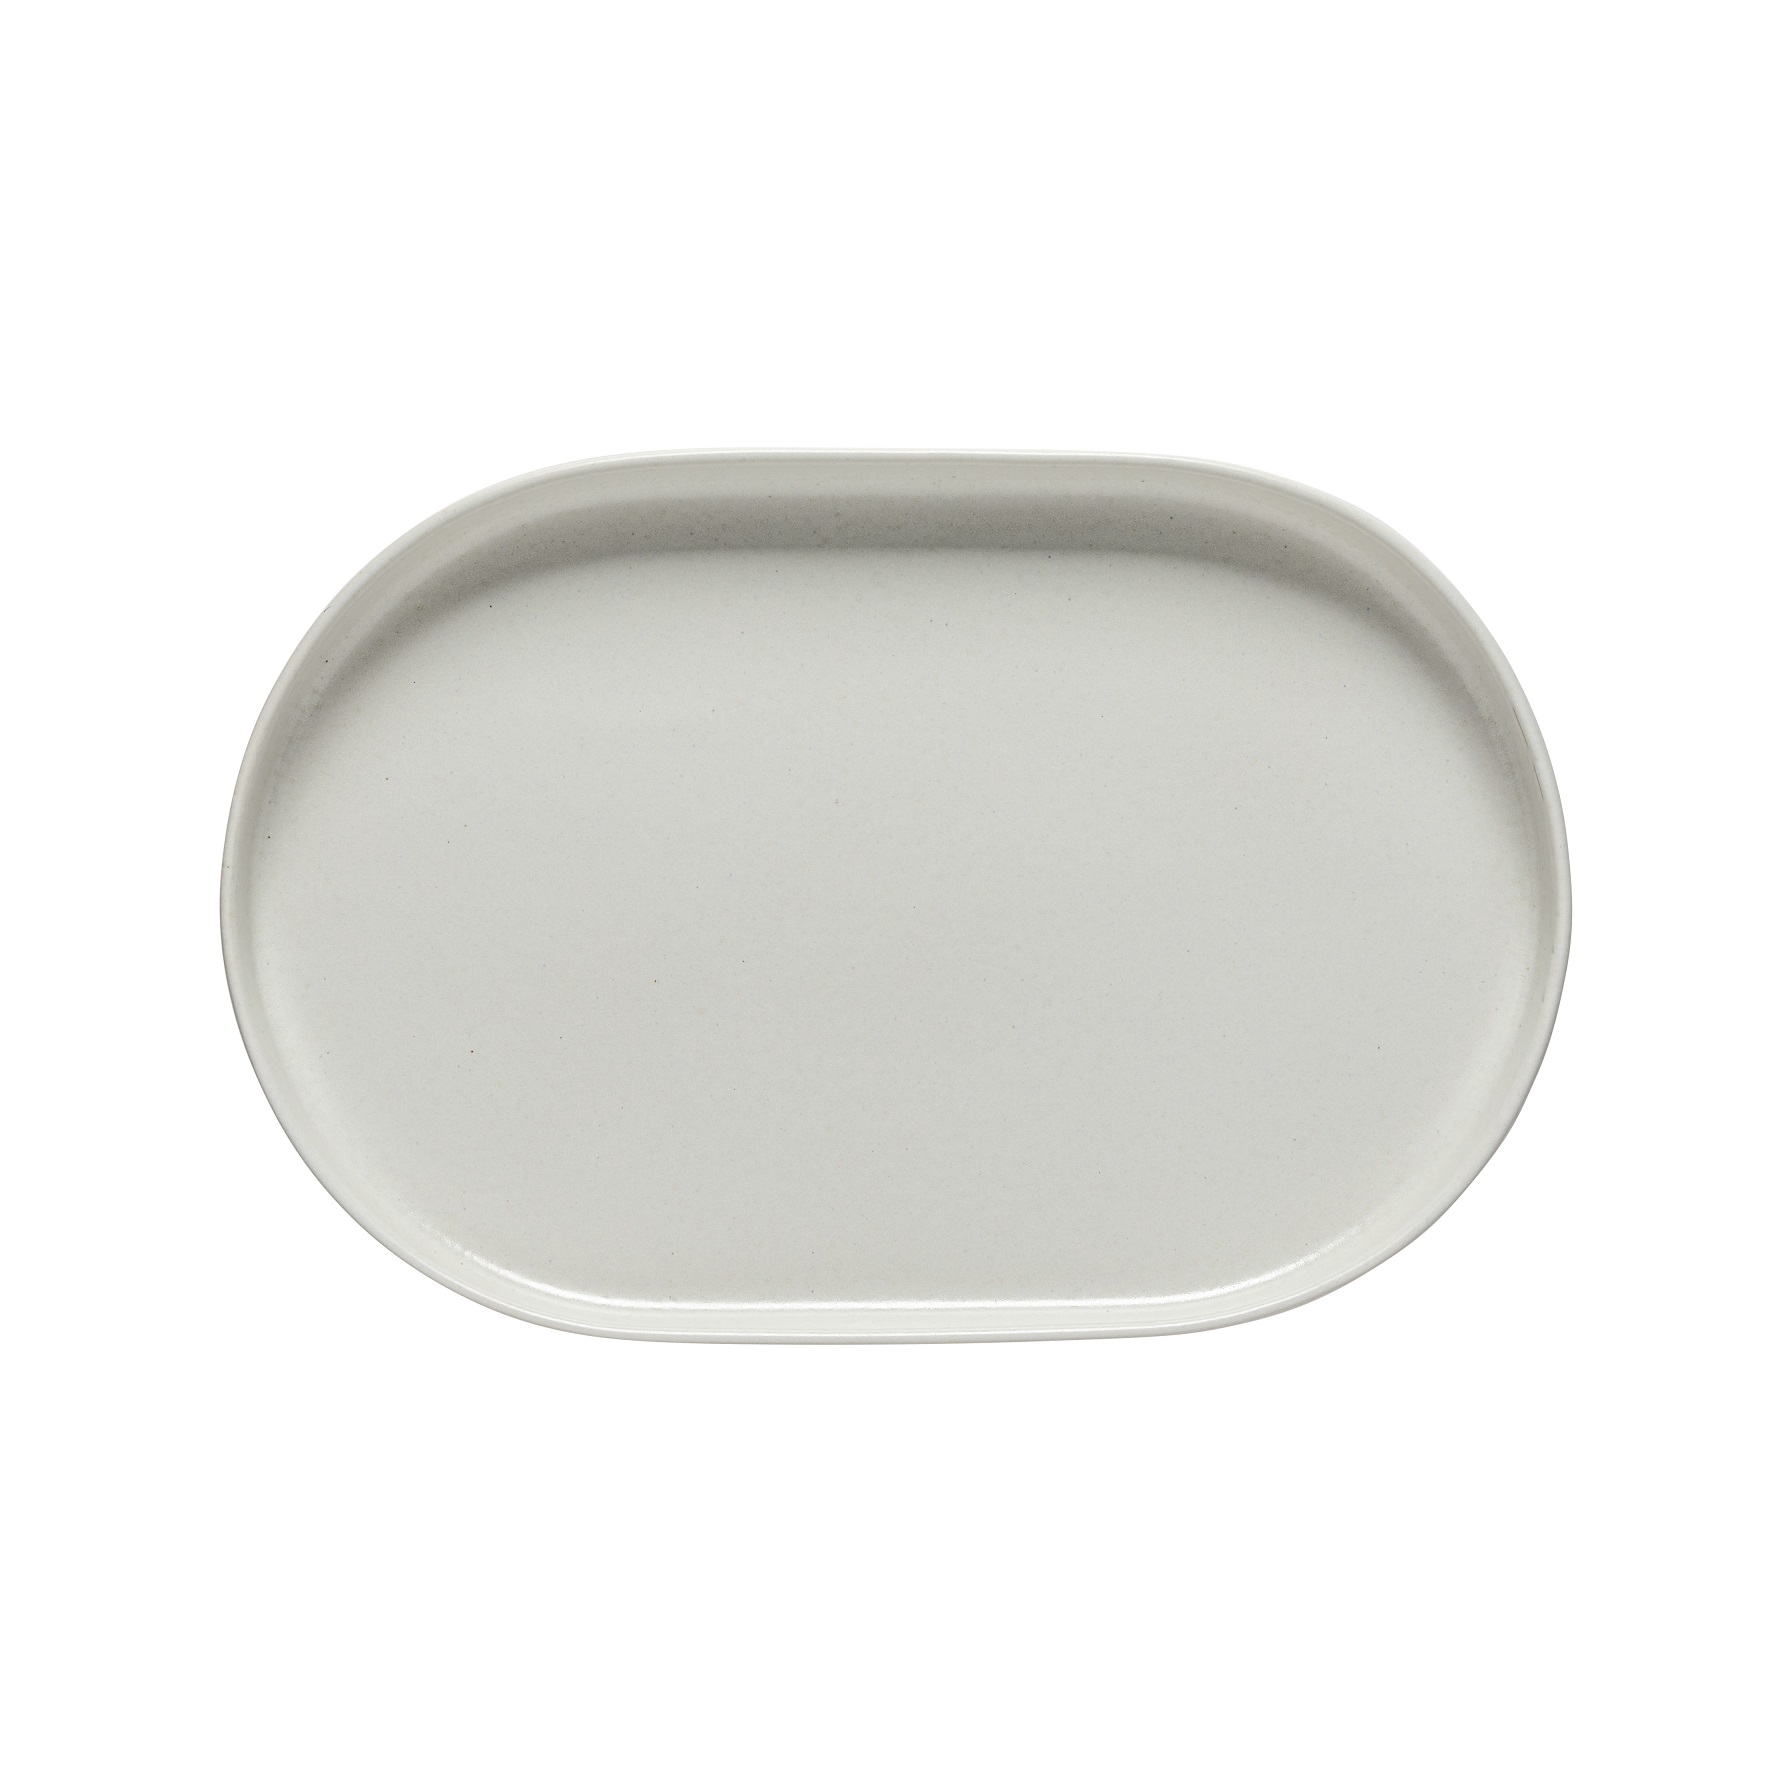 Redonda White Oval Platter 33cm Gift